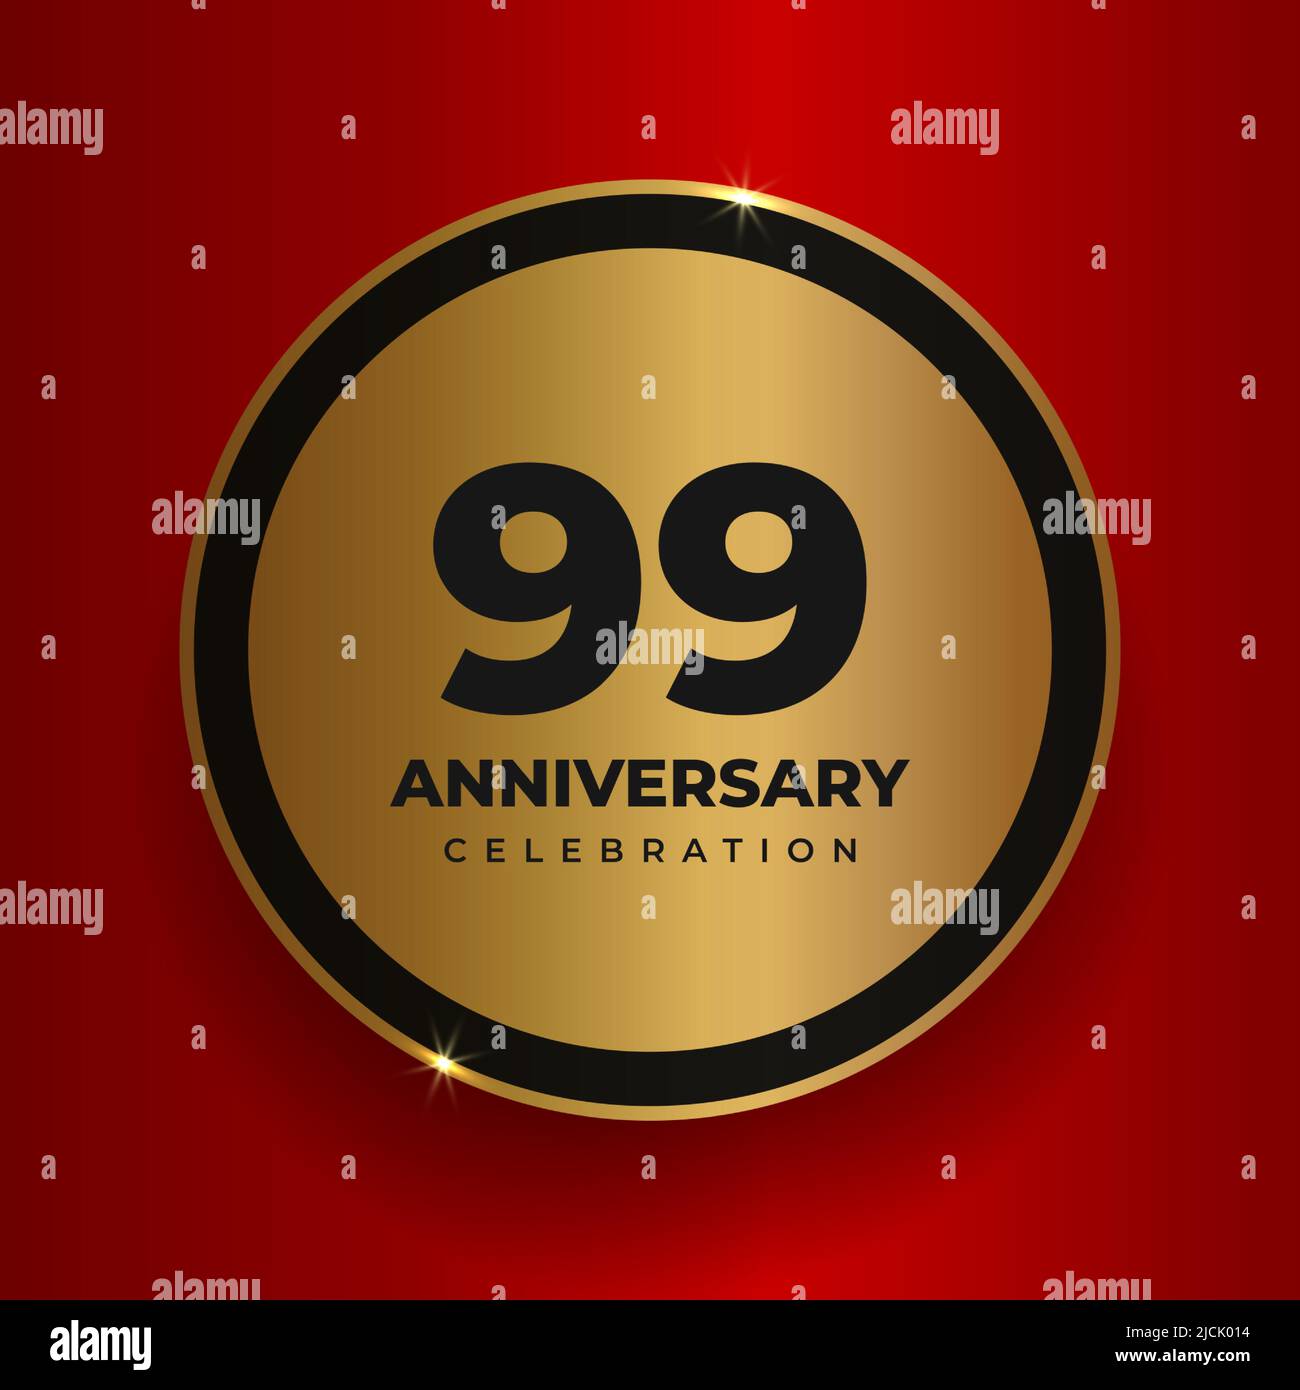 99 Jahre Jubiläum Feier Hintergrund. Wir feiern das 99.-jährige Jubiläum mit einer Poster-Vorlage. Vektor goldenen Kreis mit Zahlen und Text auf Stock Vektor